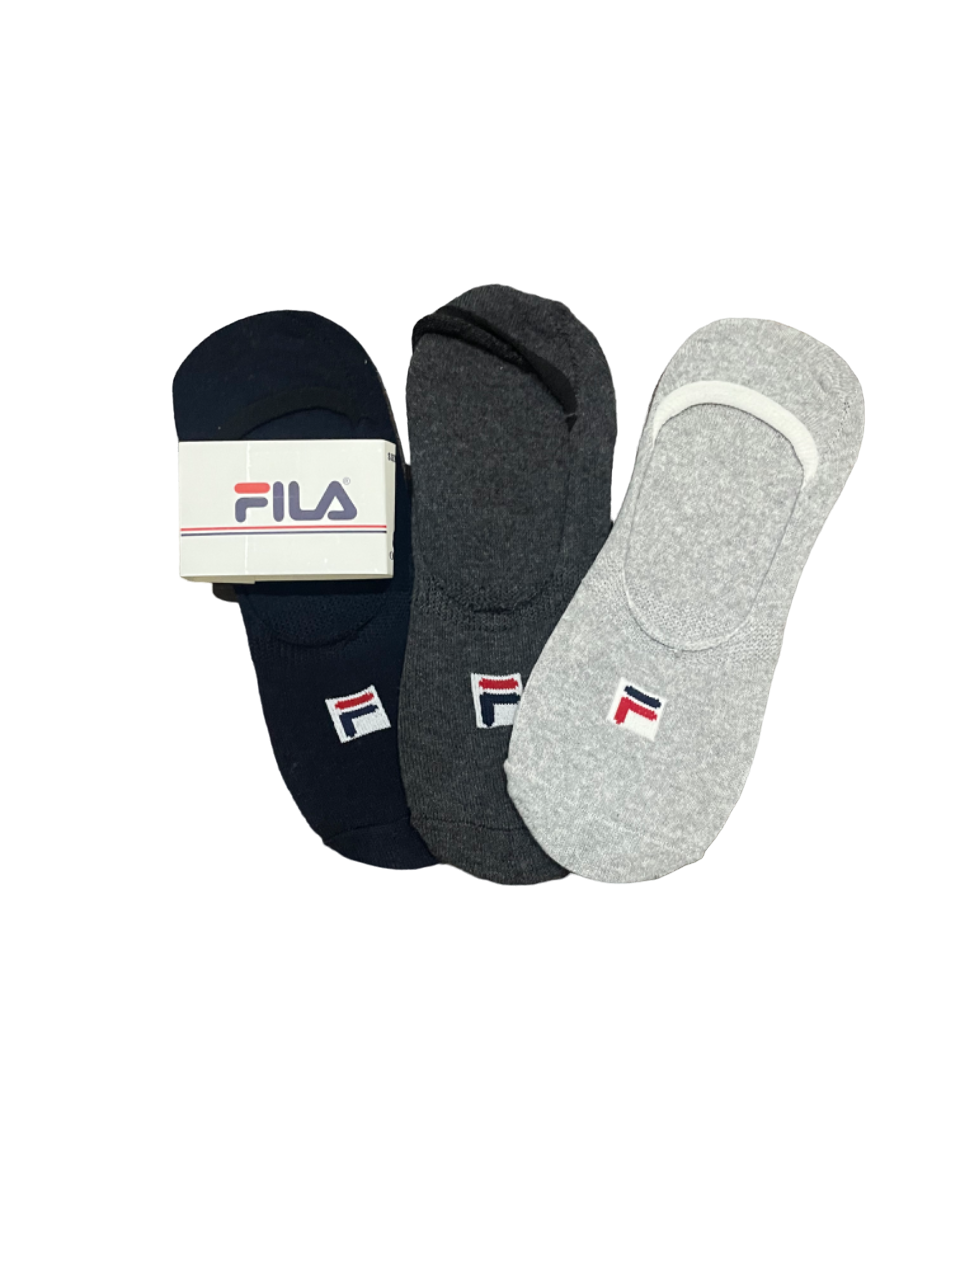 TMS Branded F-i-l-a Inside Socks 8 (Pack Of 3)